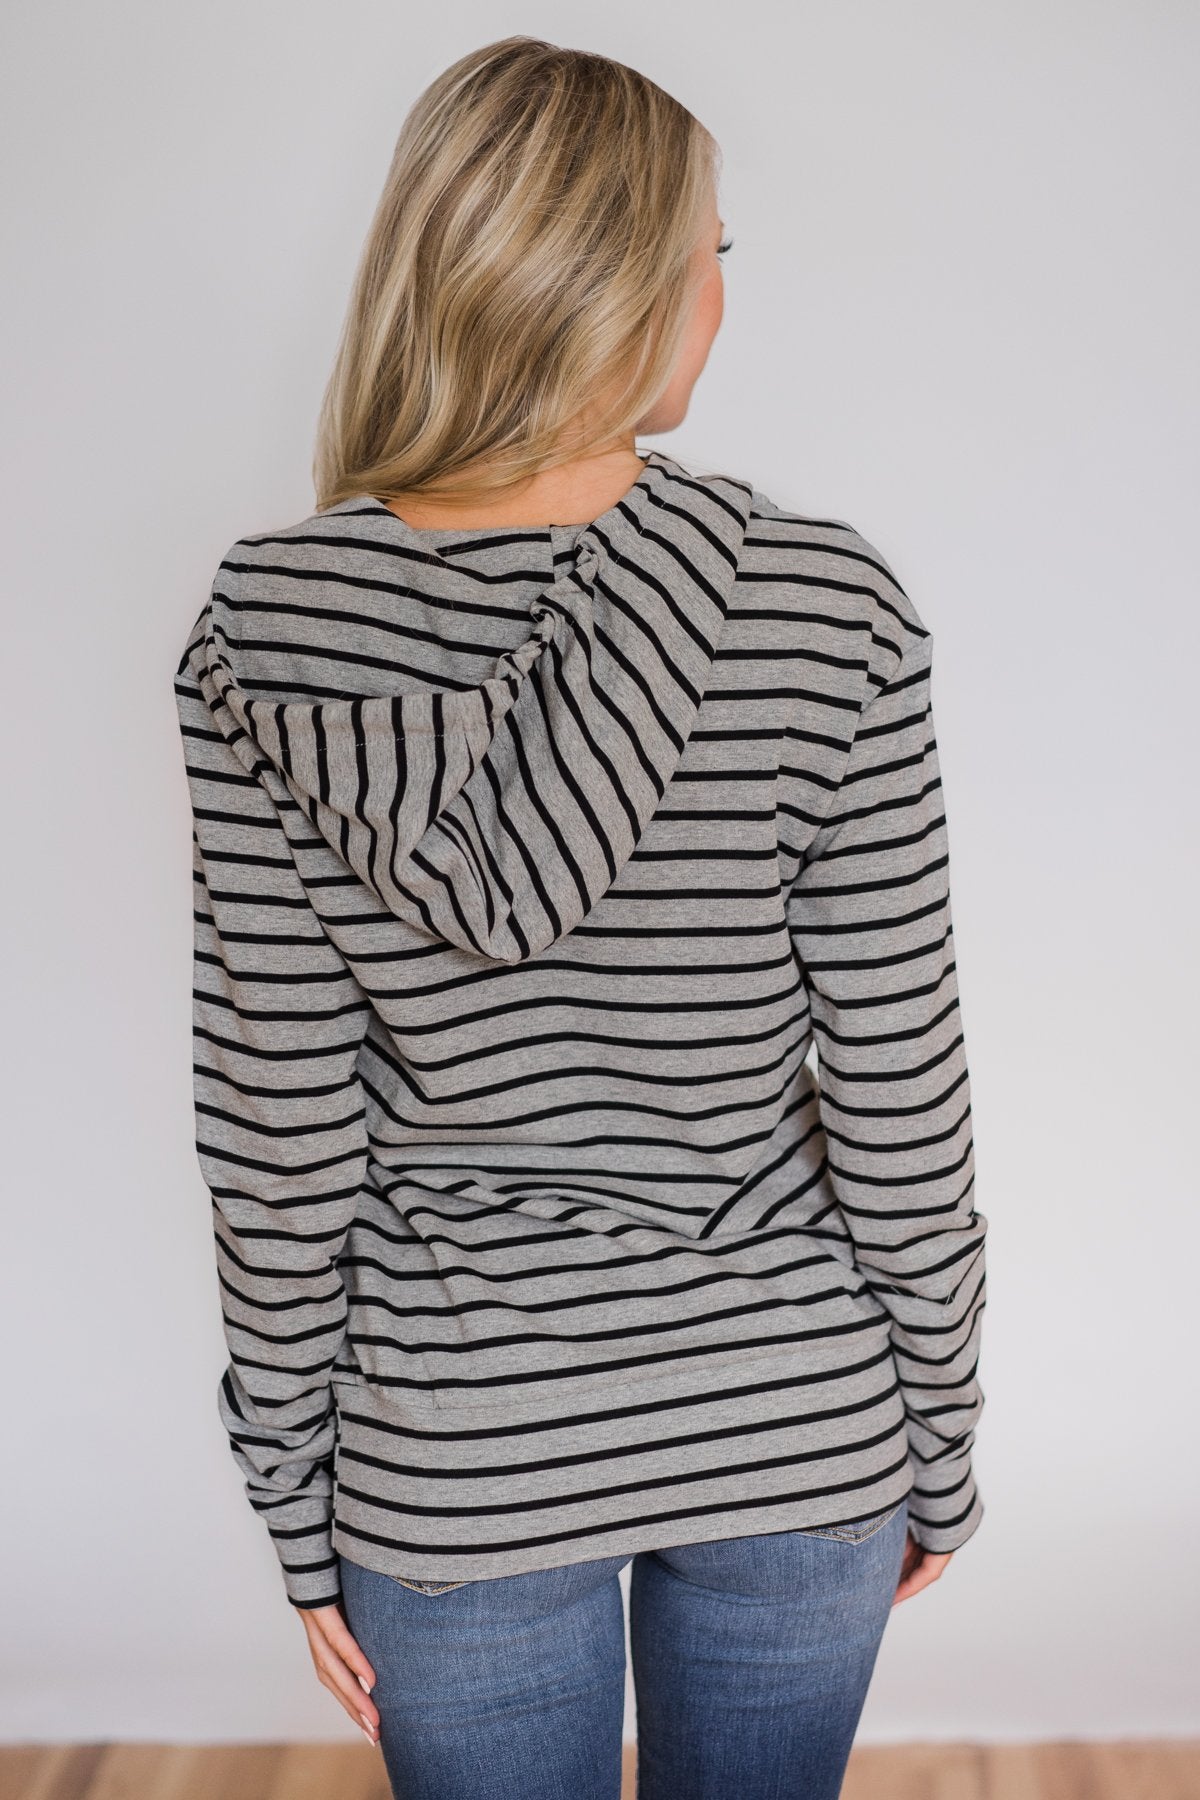 Half Zip Ampersand Hoodie- Grey and Black Striped